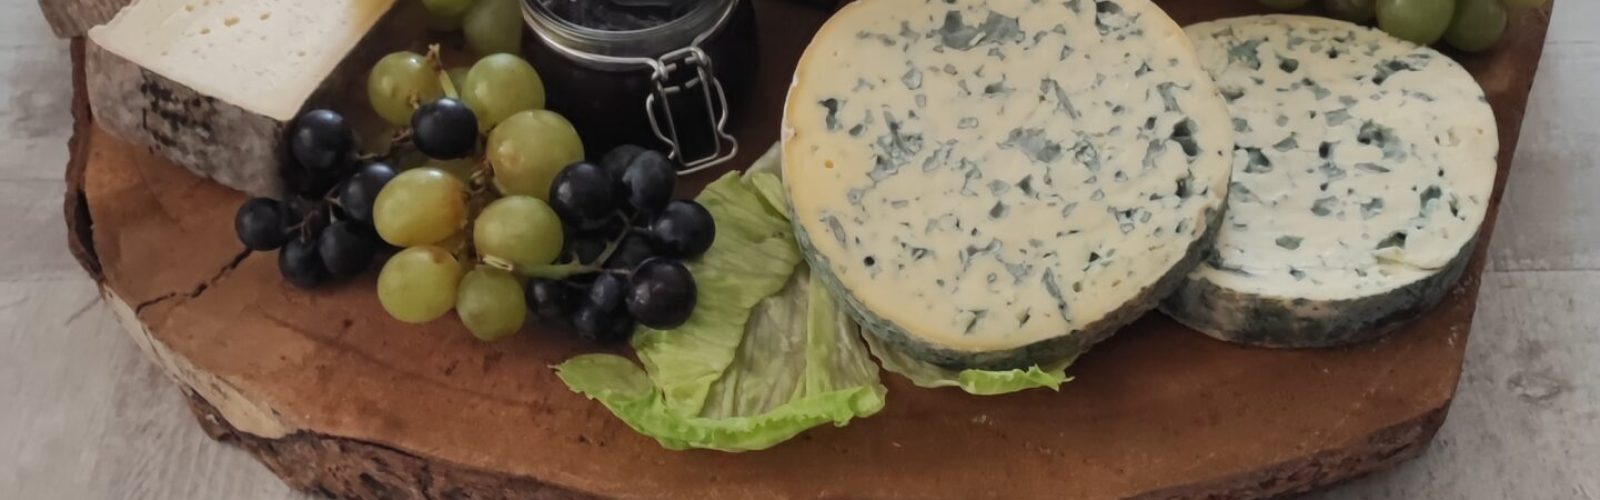 plateau-de-fromage-regionaux-et-fruits-secs